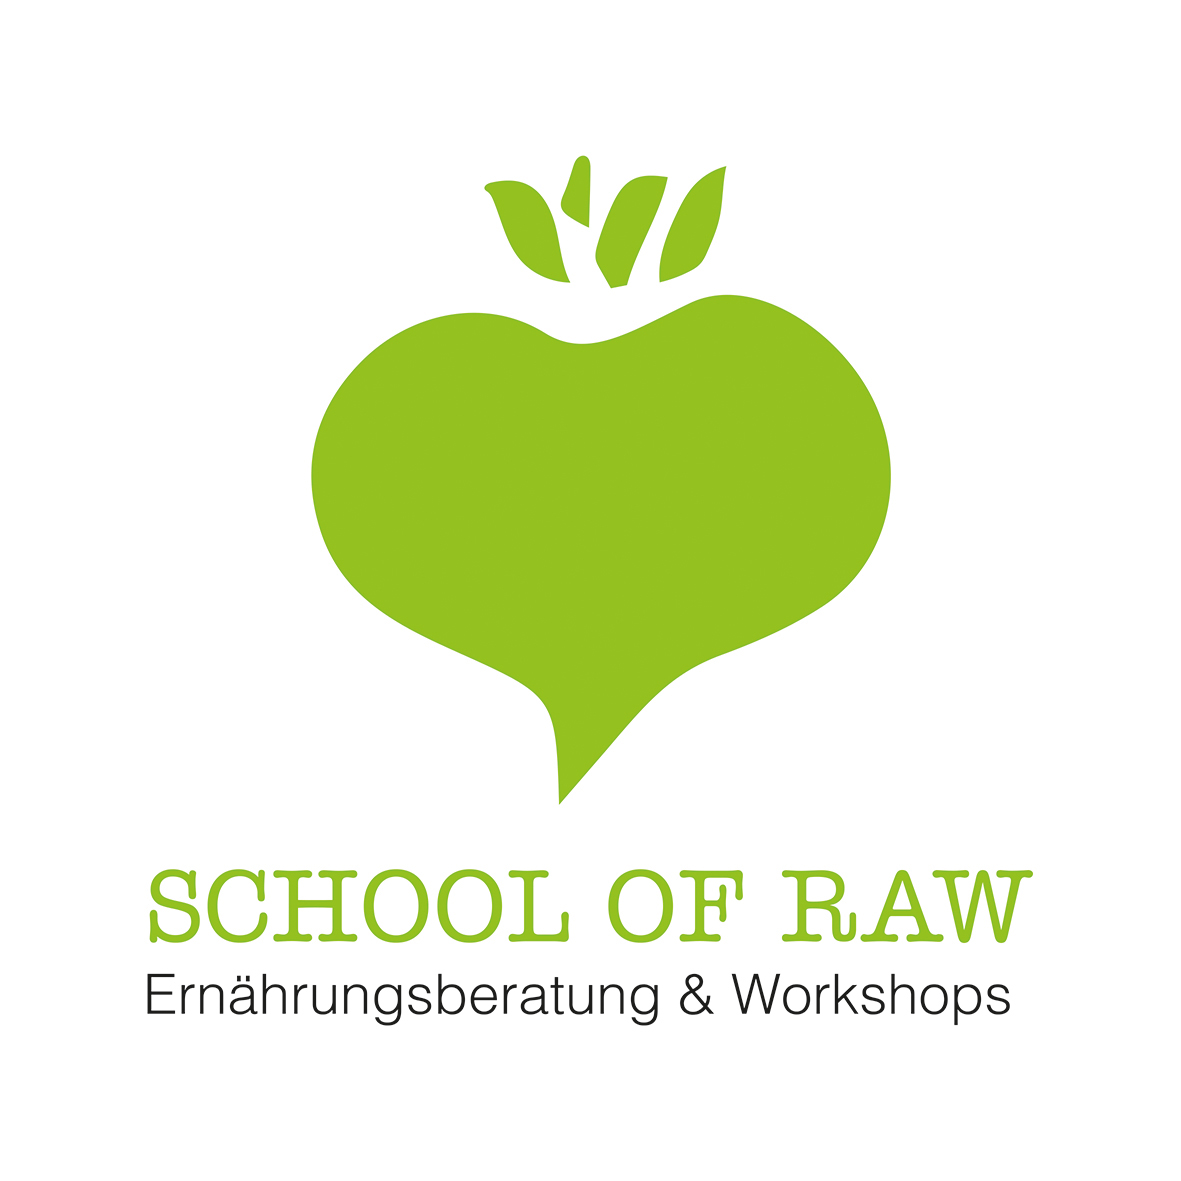 Eröffnung der School Of Raw - erste Workshops stehen fest! 50